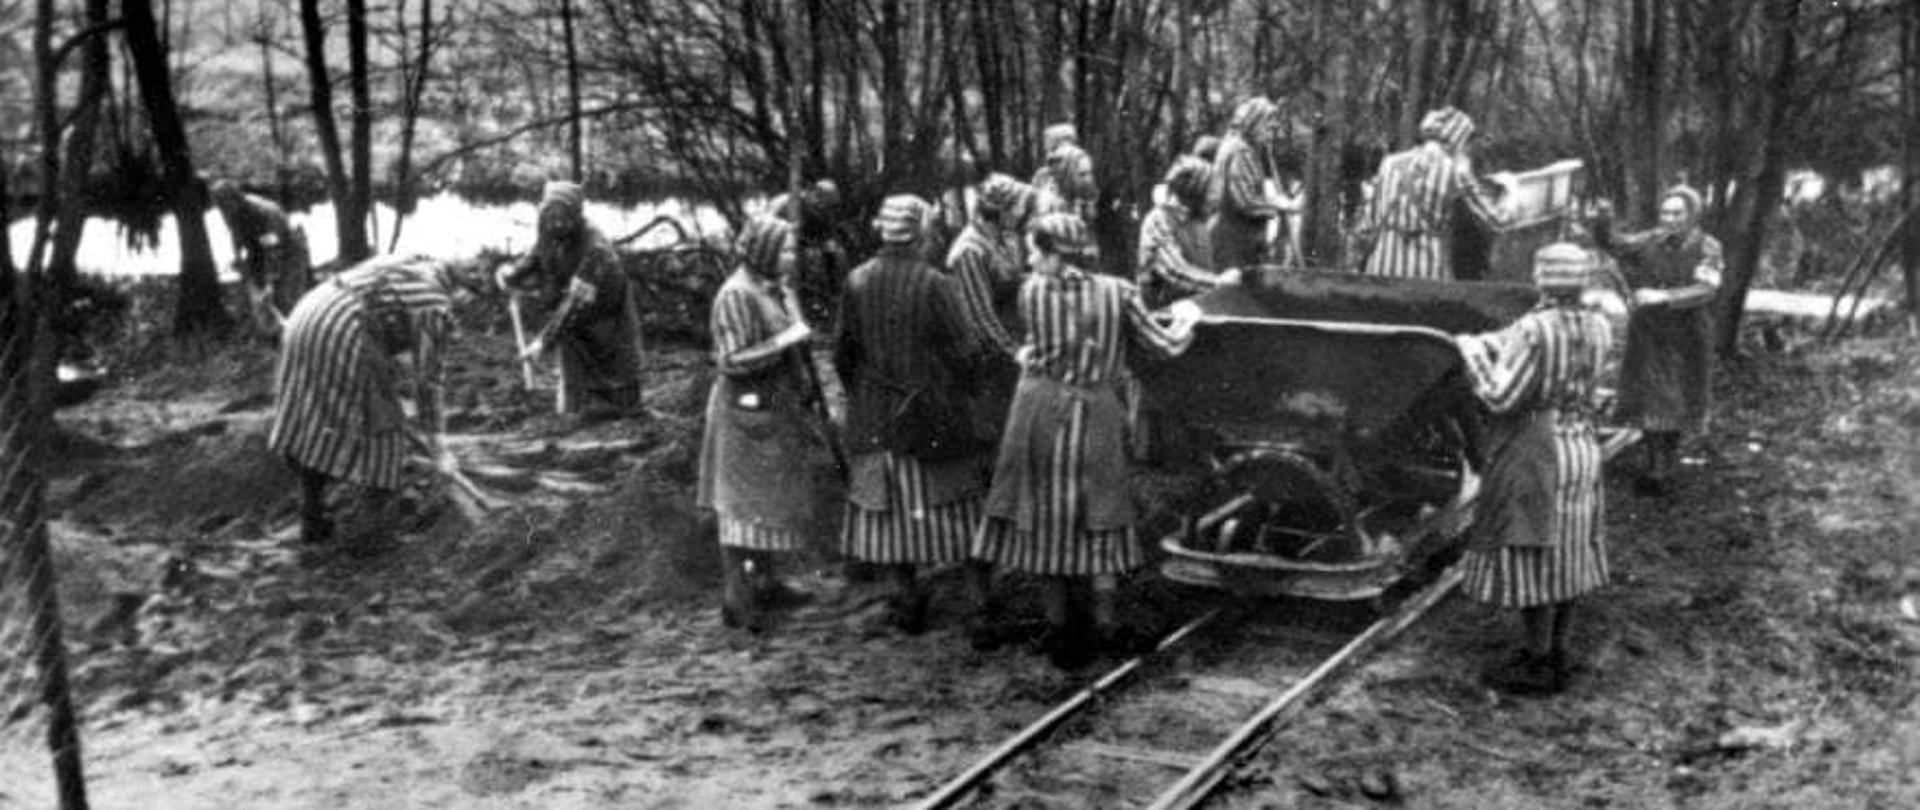 Więźniarki przy pracy – 1939
